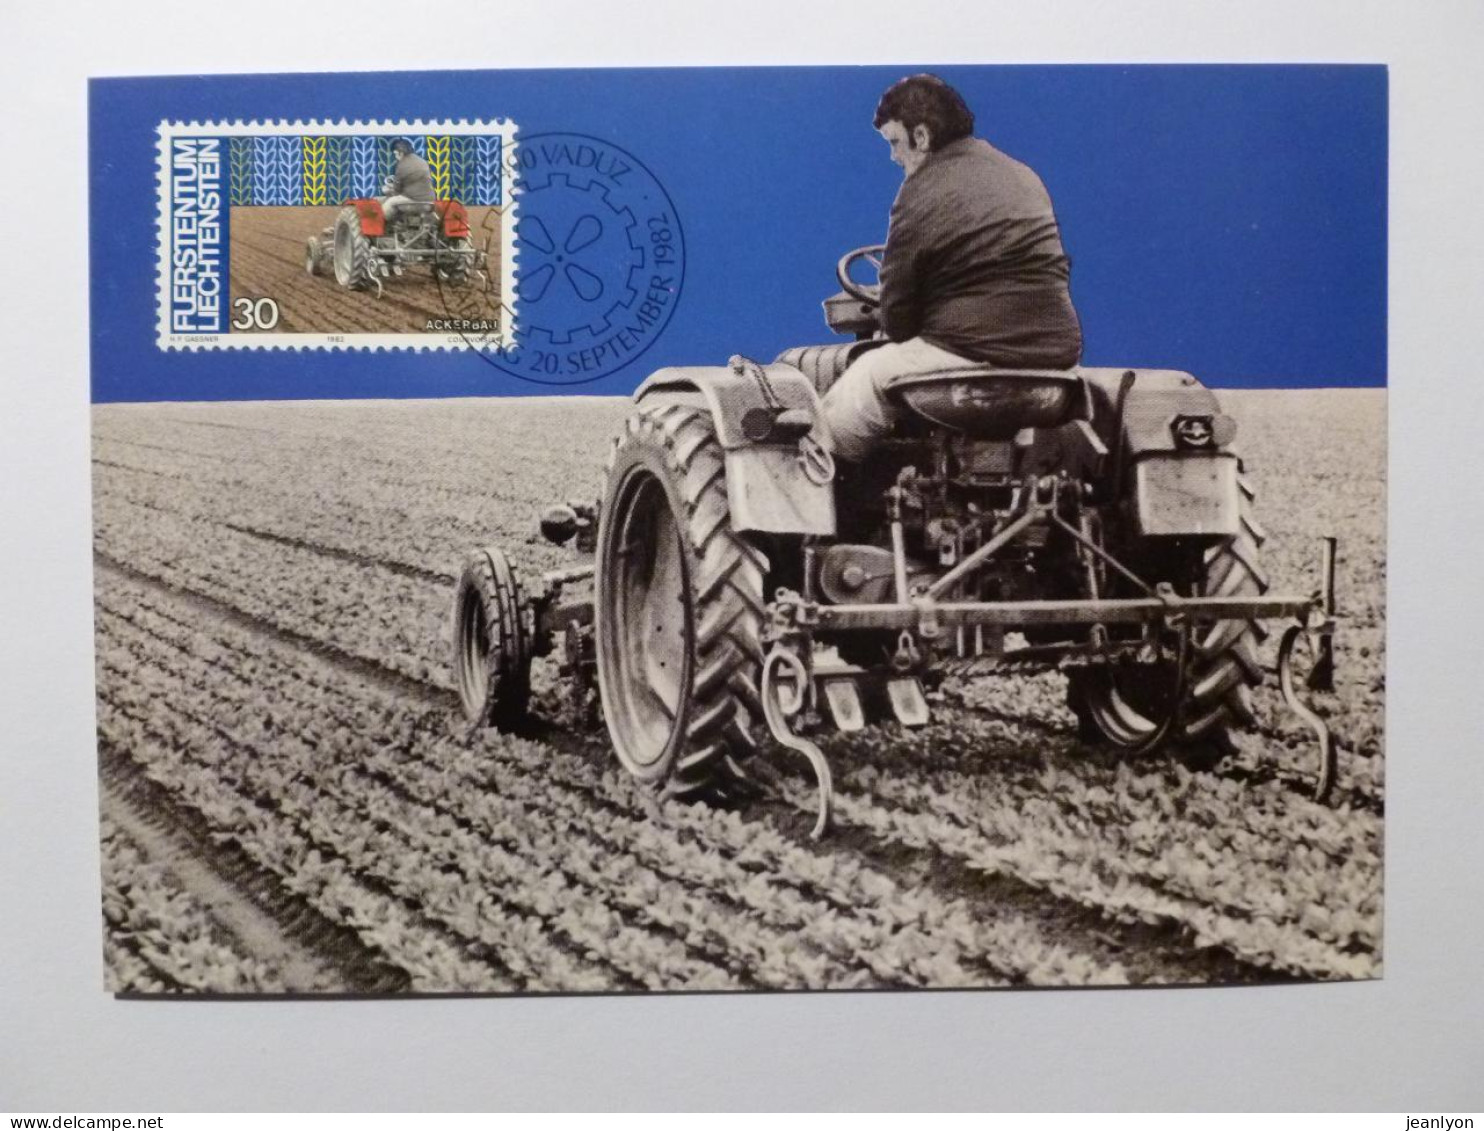 AGRICULTURE / PAYSAN - TRACTEUR - Agriculteur Sur Le Tracteur Dans Un Champ - Carte Philatélique Liechtenstein - Traktoren